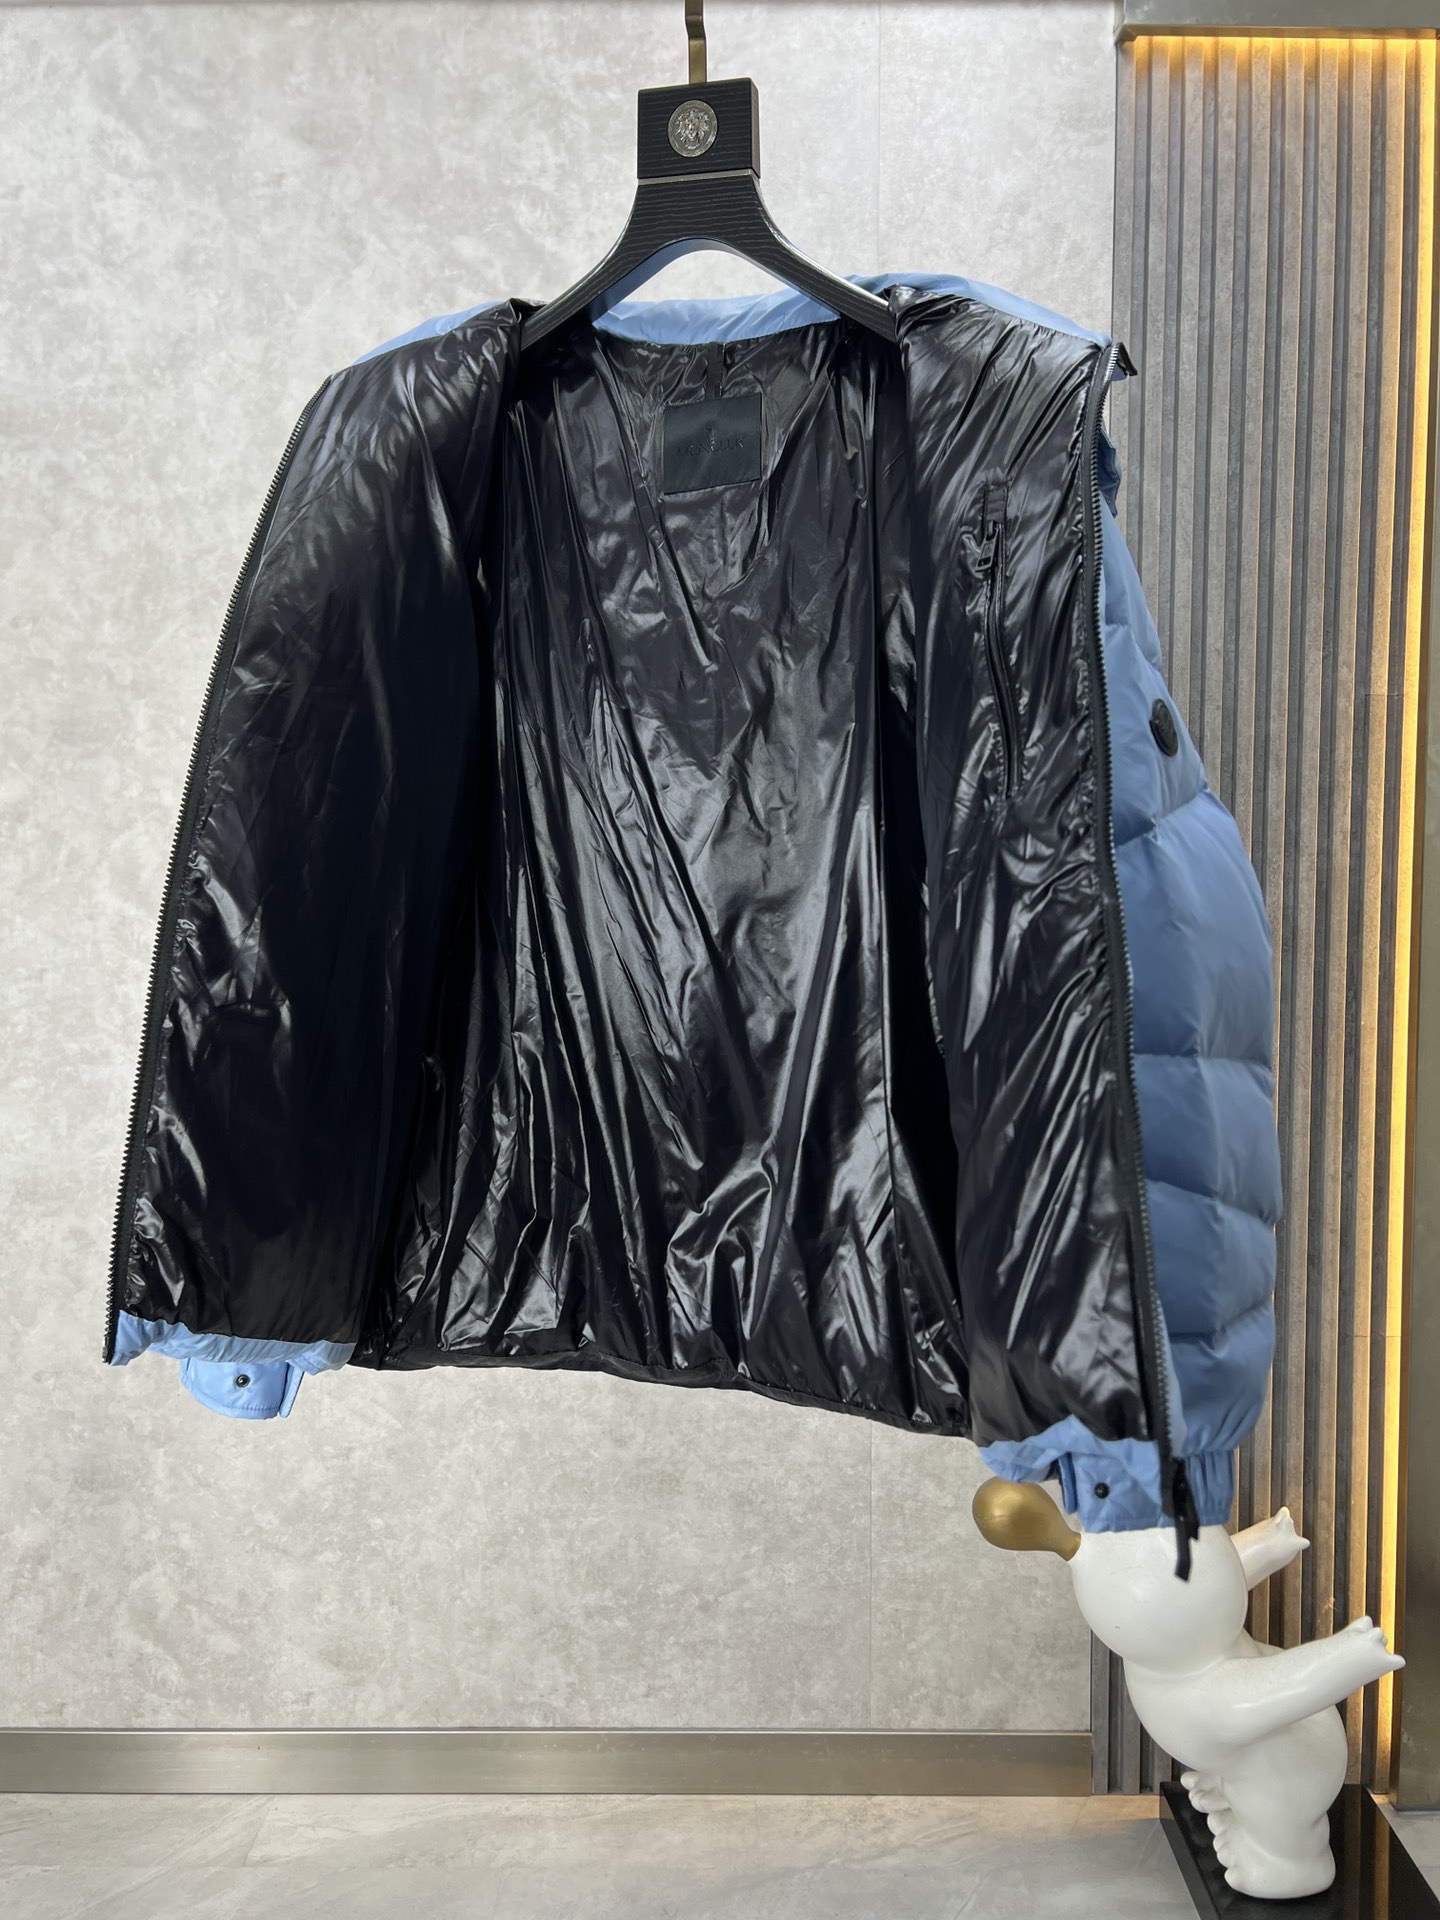 MONCLER蒙口秋冬新品男士羽绒外套专为注重功能性和美观性的男士设计高密度的尼龙面料内里填充300+克